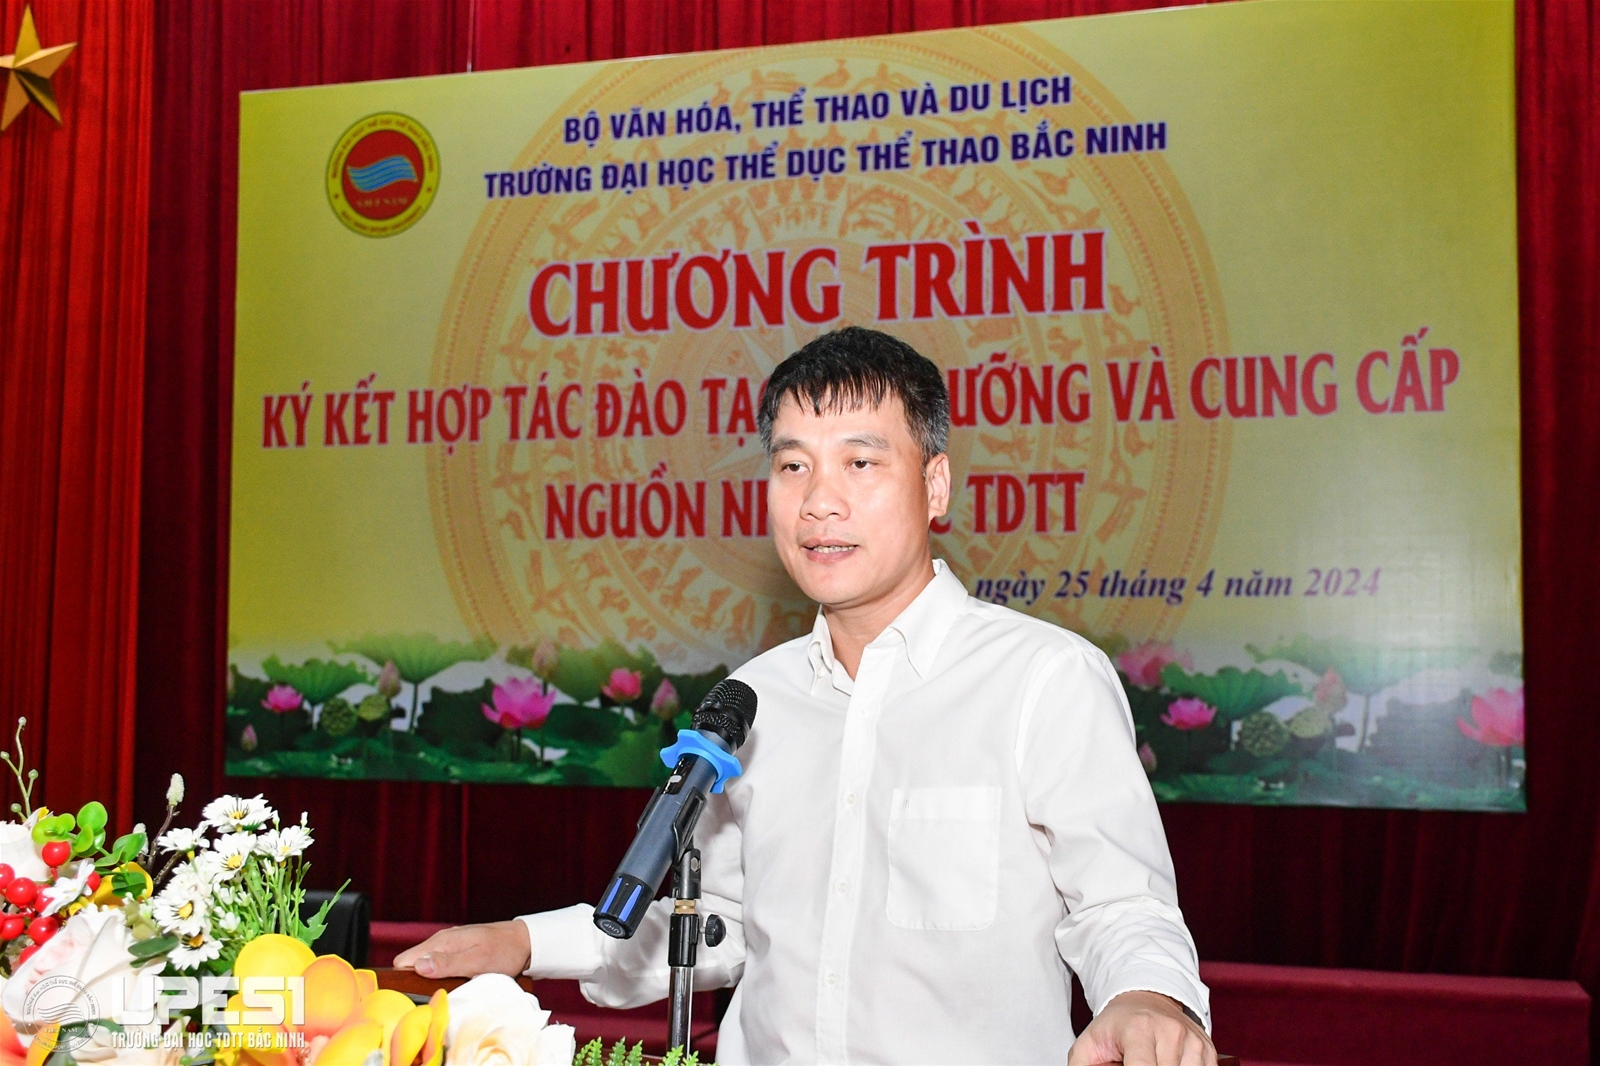 Chương trình ký kết hợp tác đào tạo, bồi dưỡng và cung cấp nguồn nhân lực TDTT tại Trường Đại học TDTT Bắc Ninh năm 2024 - Ảnh 1.